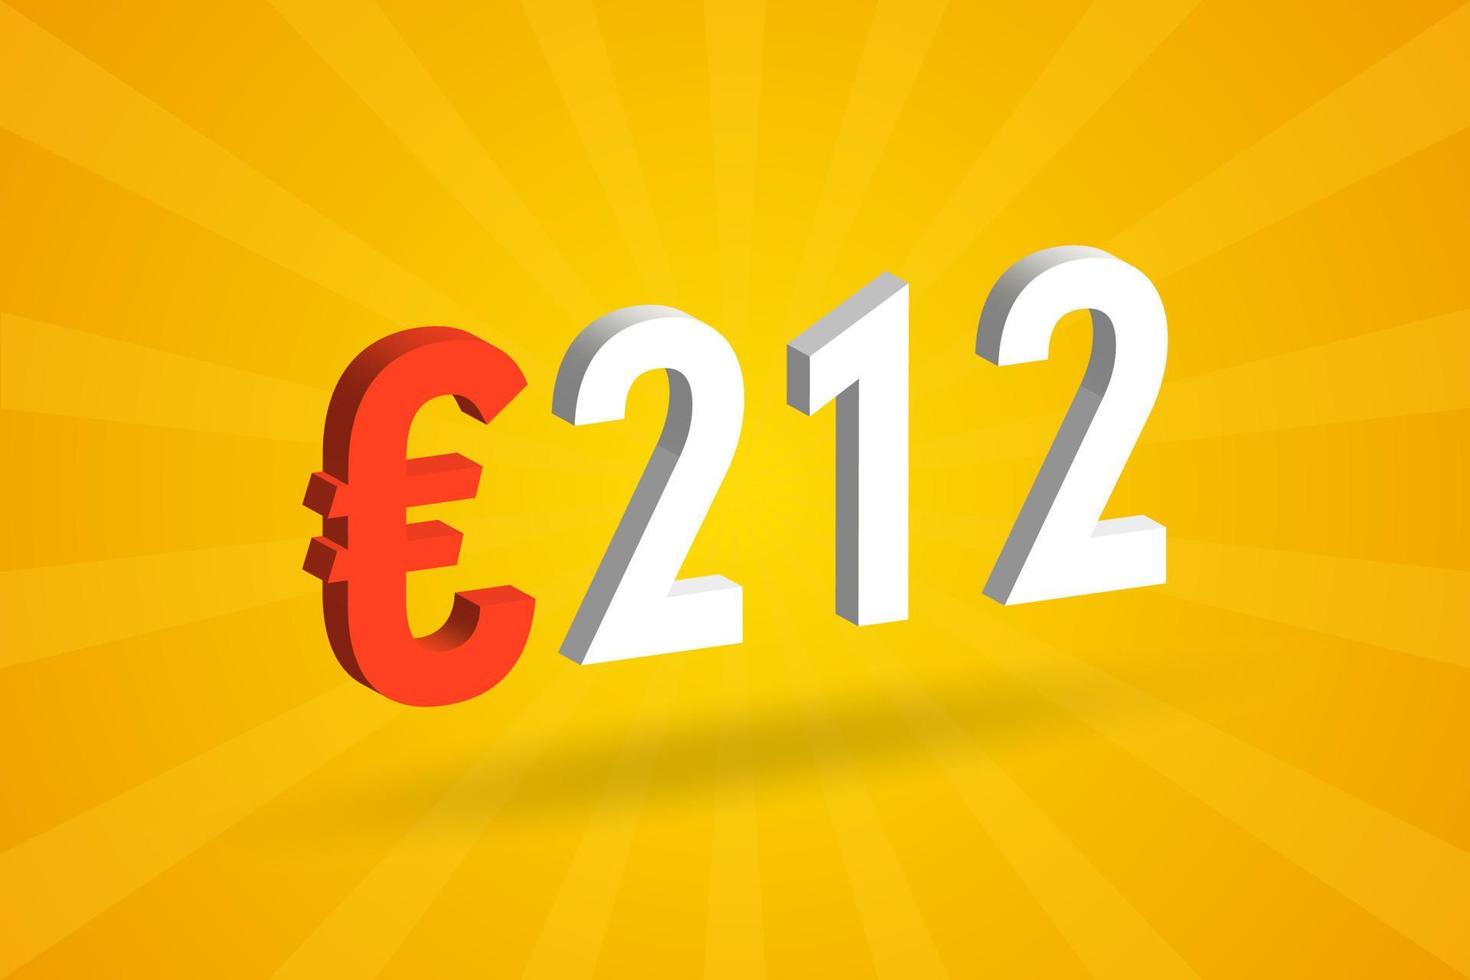 212 Euro moneta 3d vettore testo simbolo. 3d 212 Euro europeo unione i soldi azione vettore